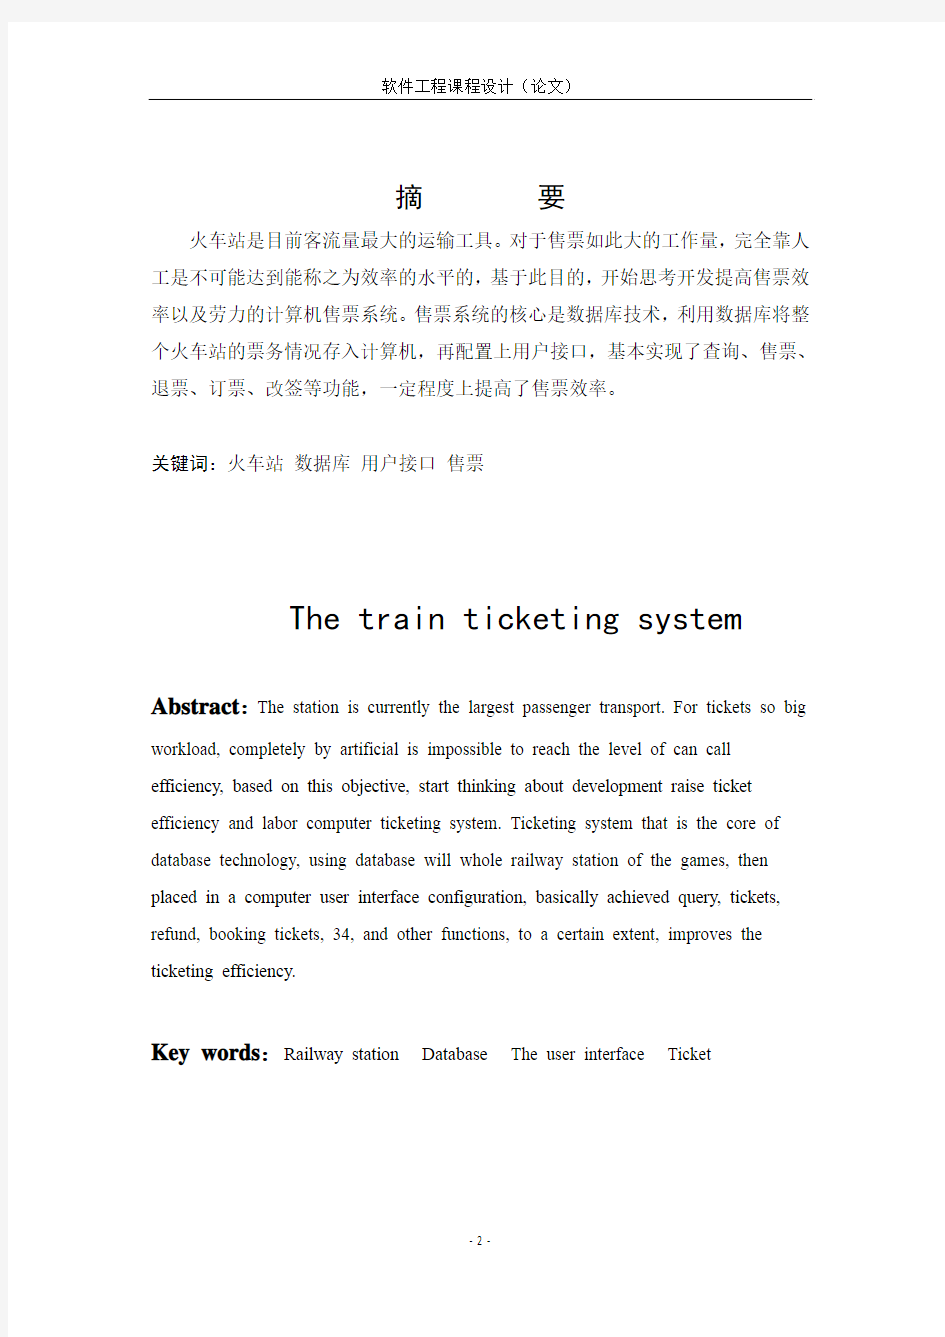 软件工程程序设计-火车售票系统